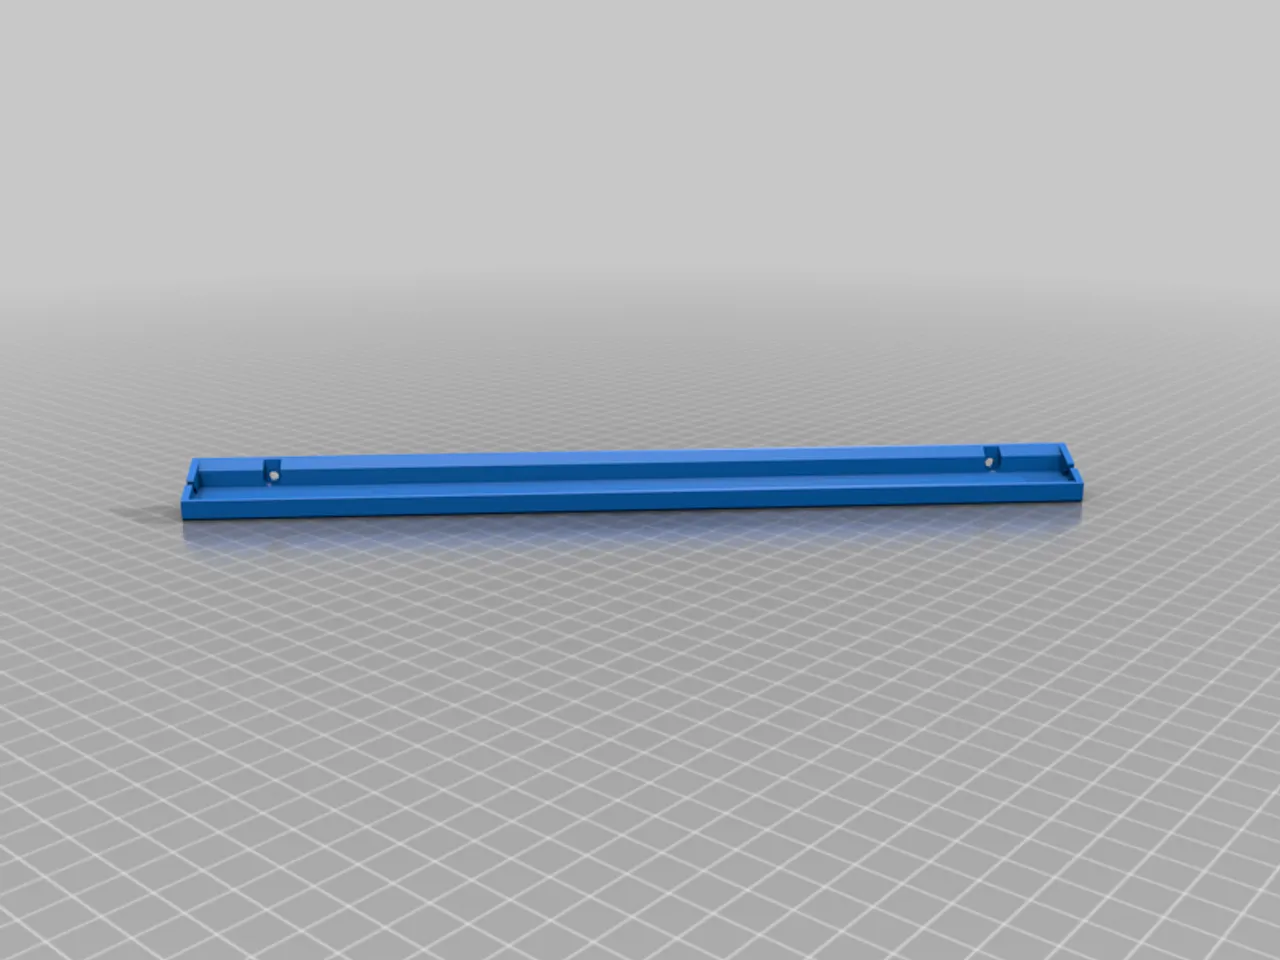 LED Strip Holder for Voron 2.4 by FunFunBoy